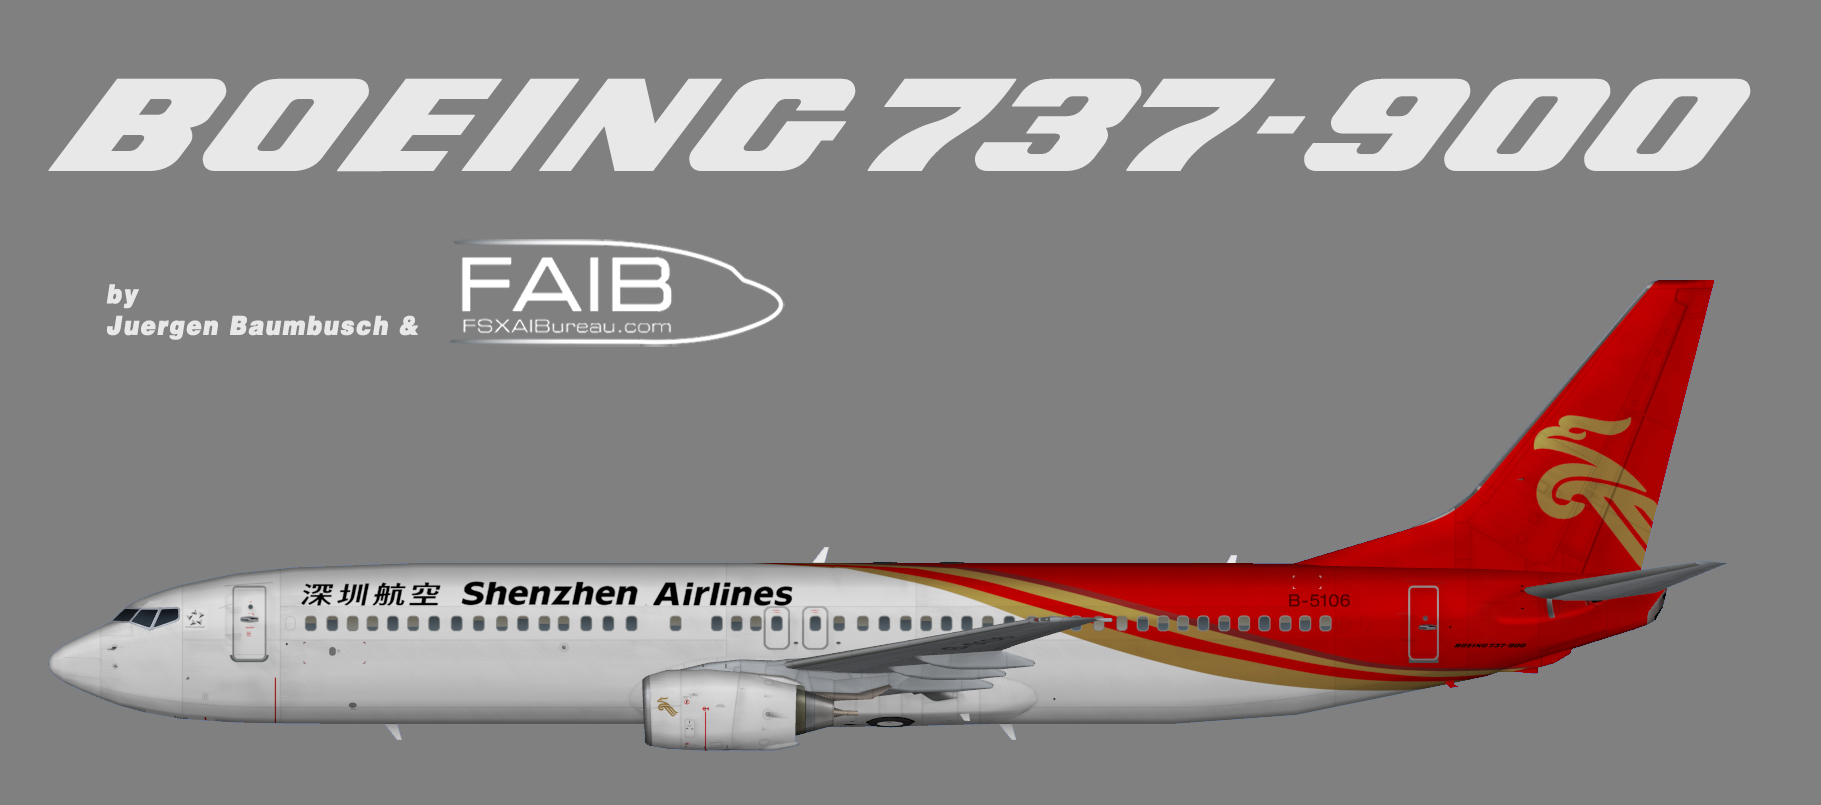 Shenzhen Airlines Boeing 737-900